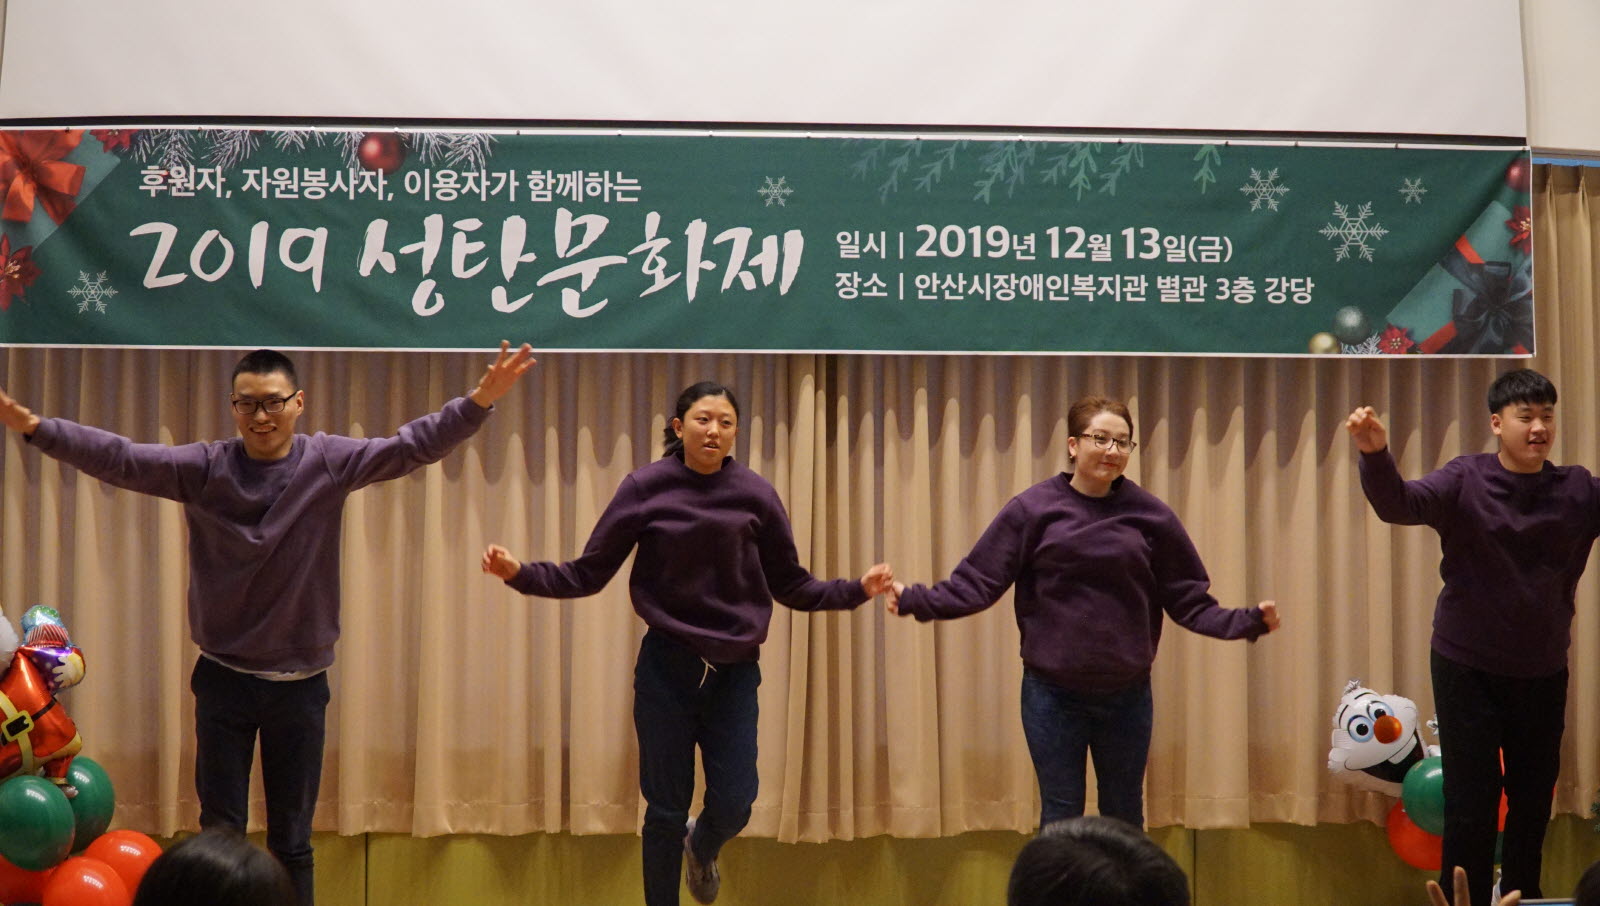 성인자립지원팀 청포도 댄스팀 4명이 춤을 추고 있는 모습